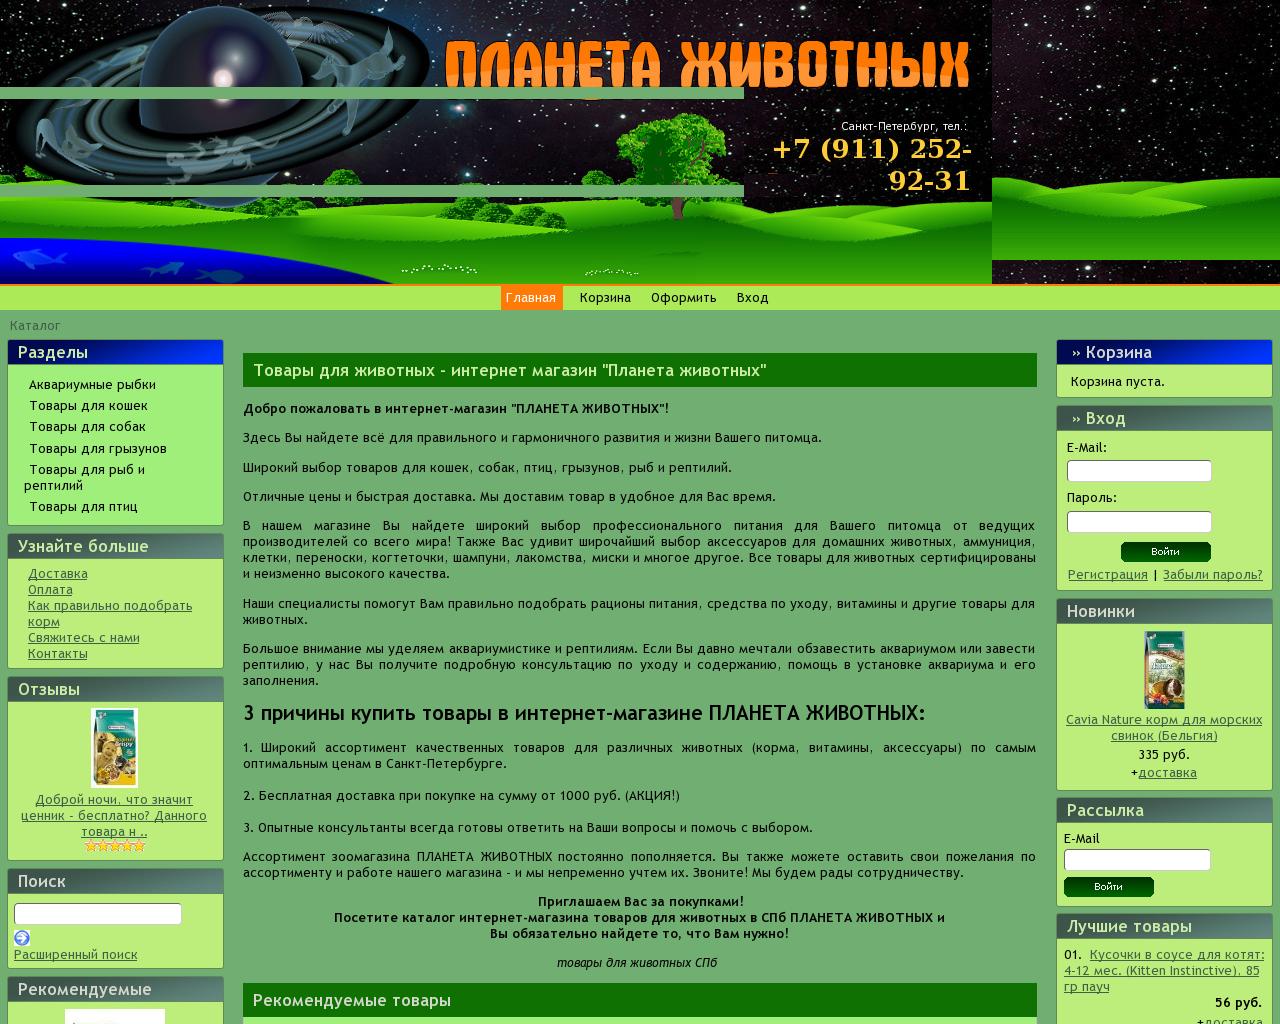 Изображение сайта planeta-zhivotnyh.ru в разрешении 1280x1024